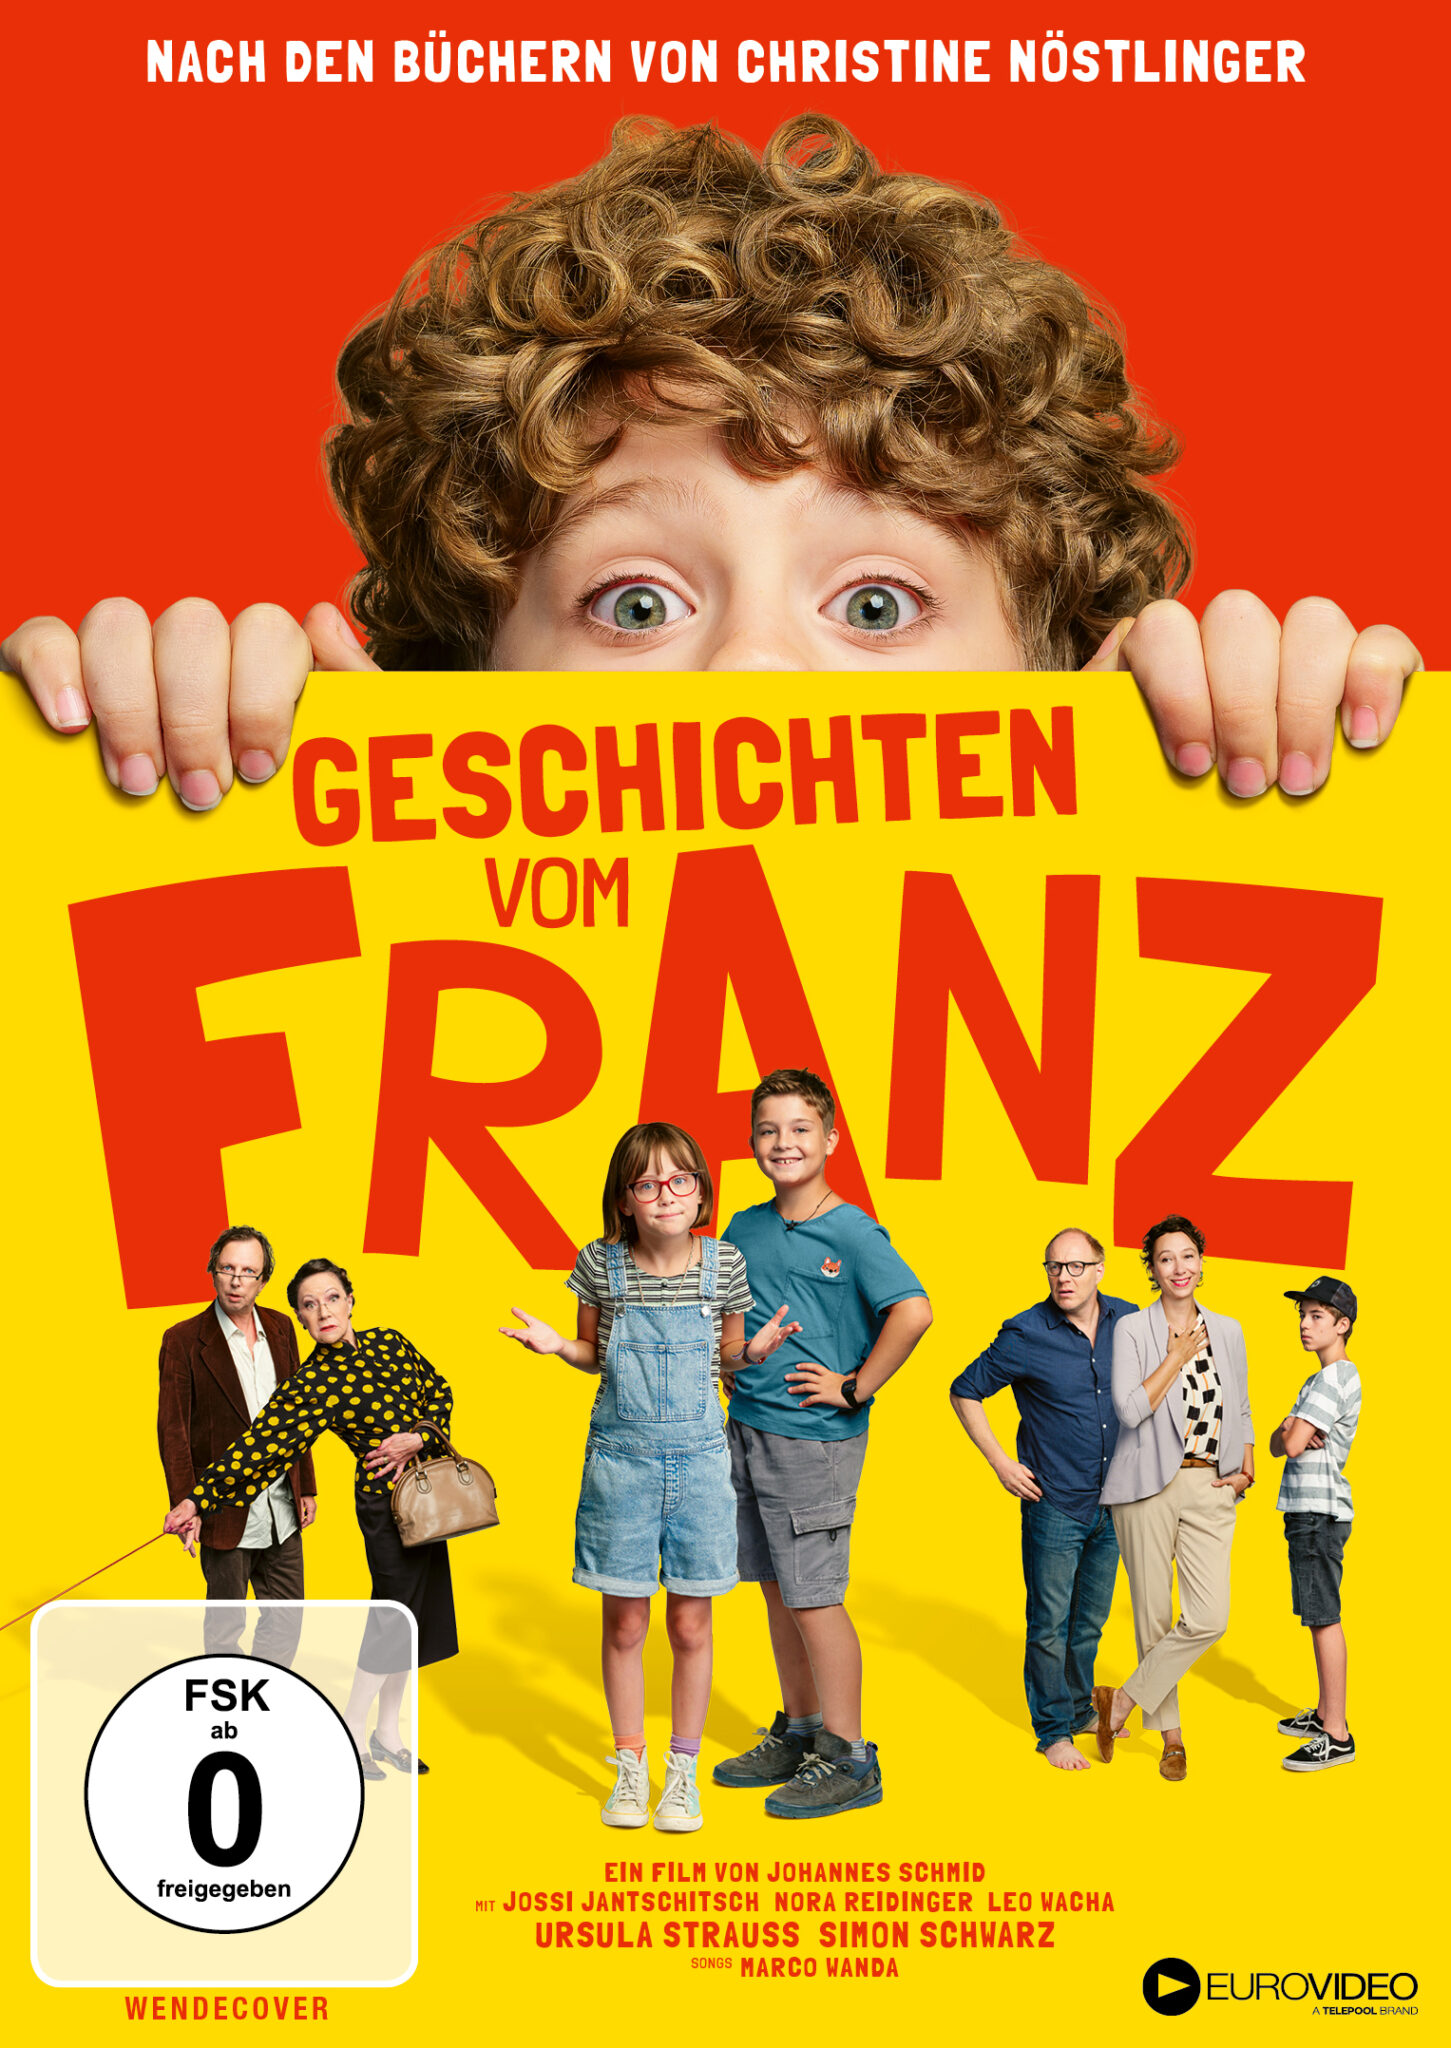 Der kleine Franz blickt hinter dem Filmtitel hervor. Seine Freunde und Eltern stehen im unteren Bildrand. | Geschichten vom Franz.